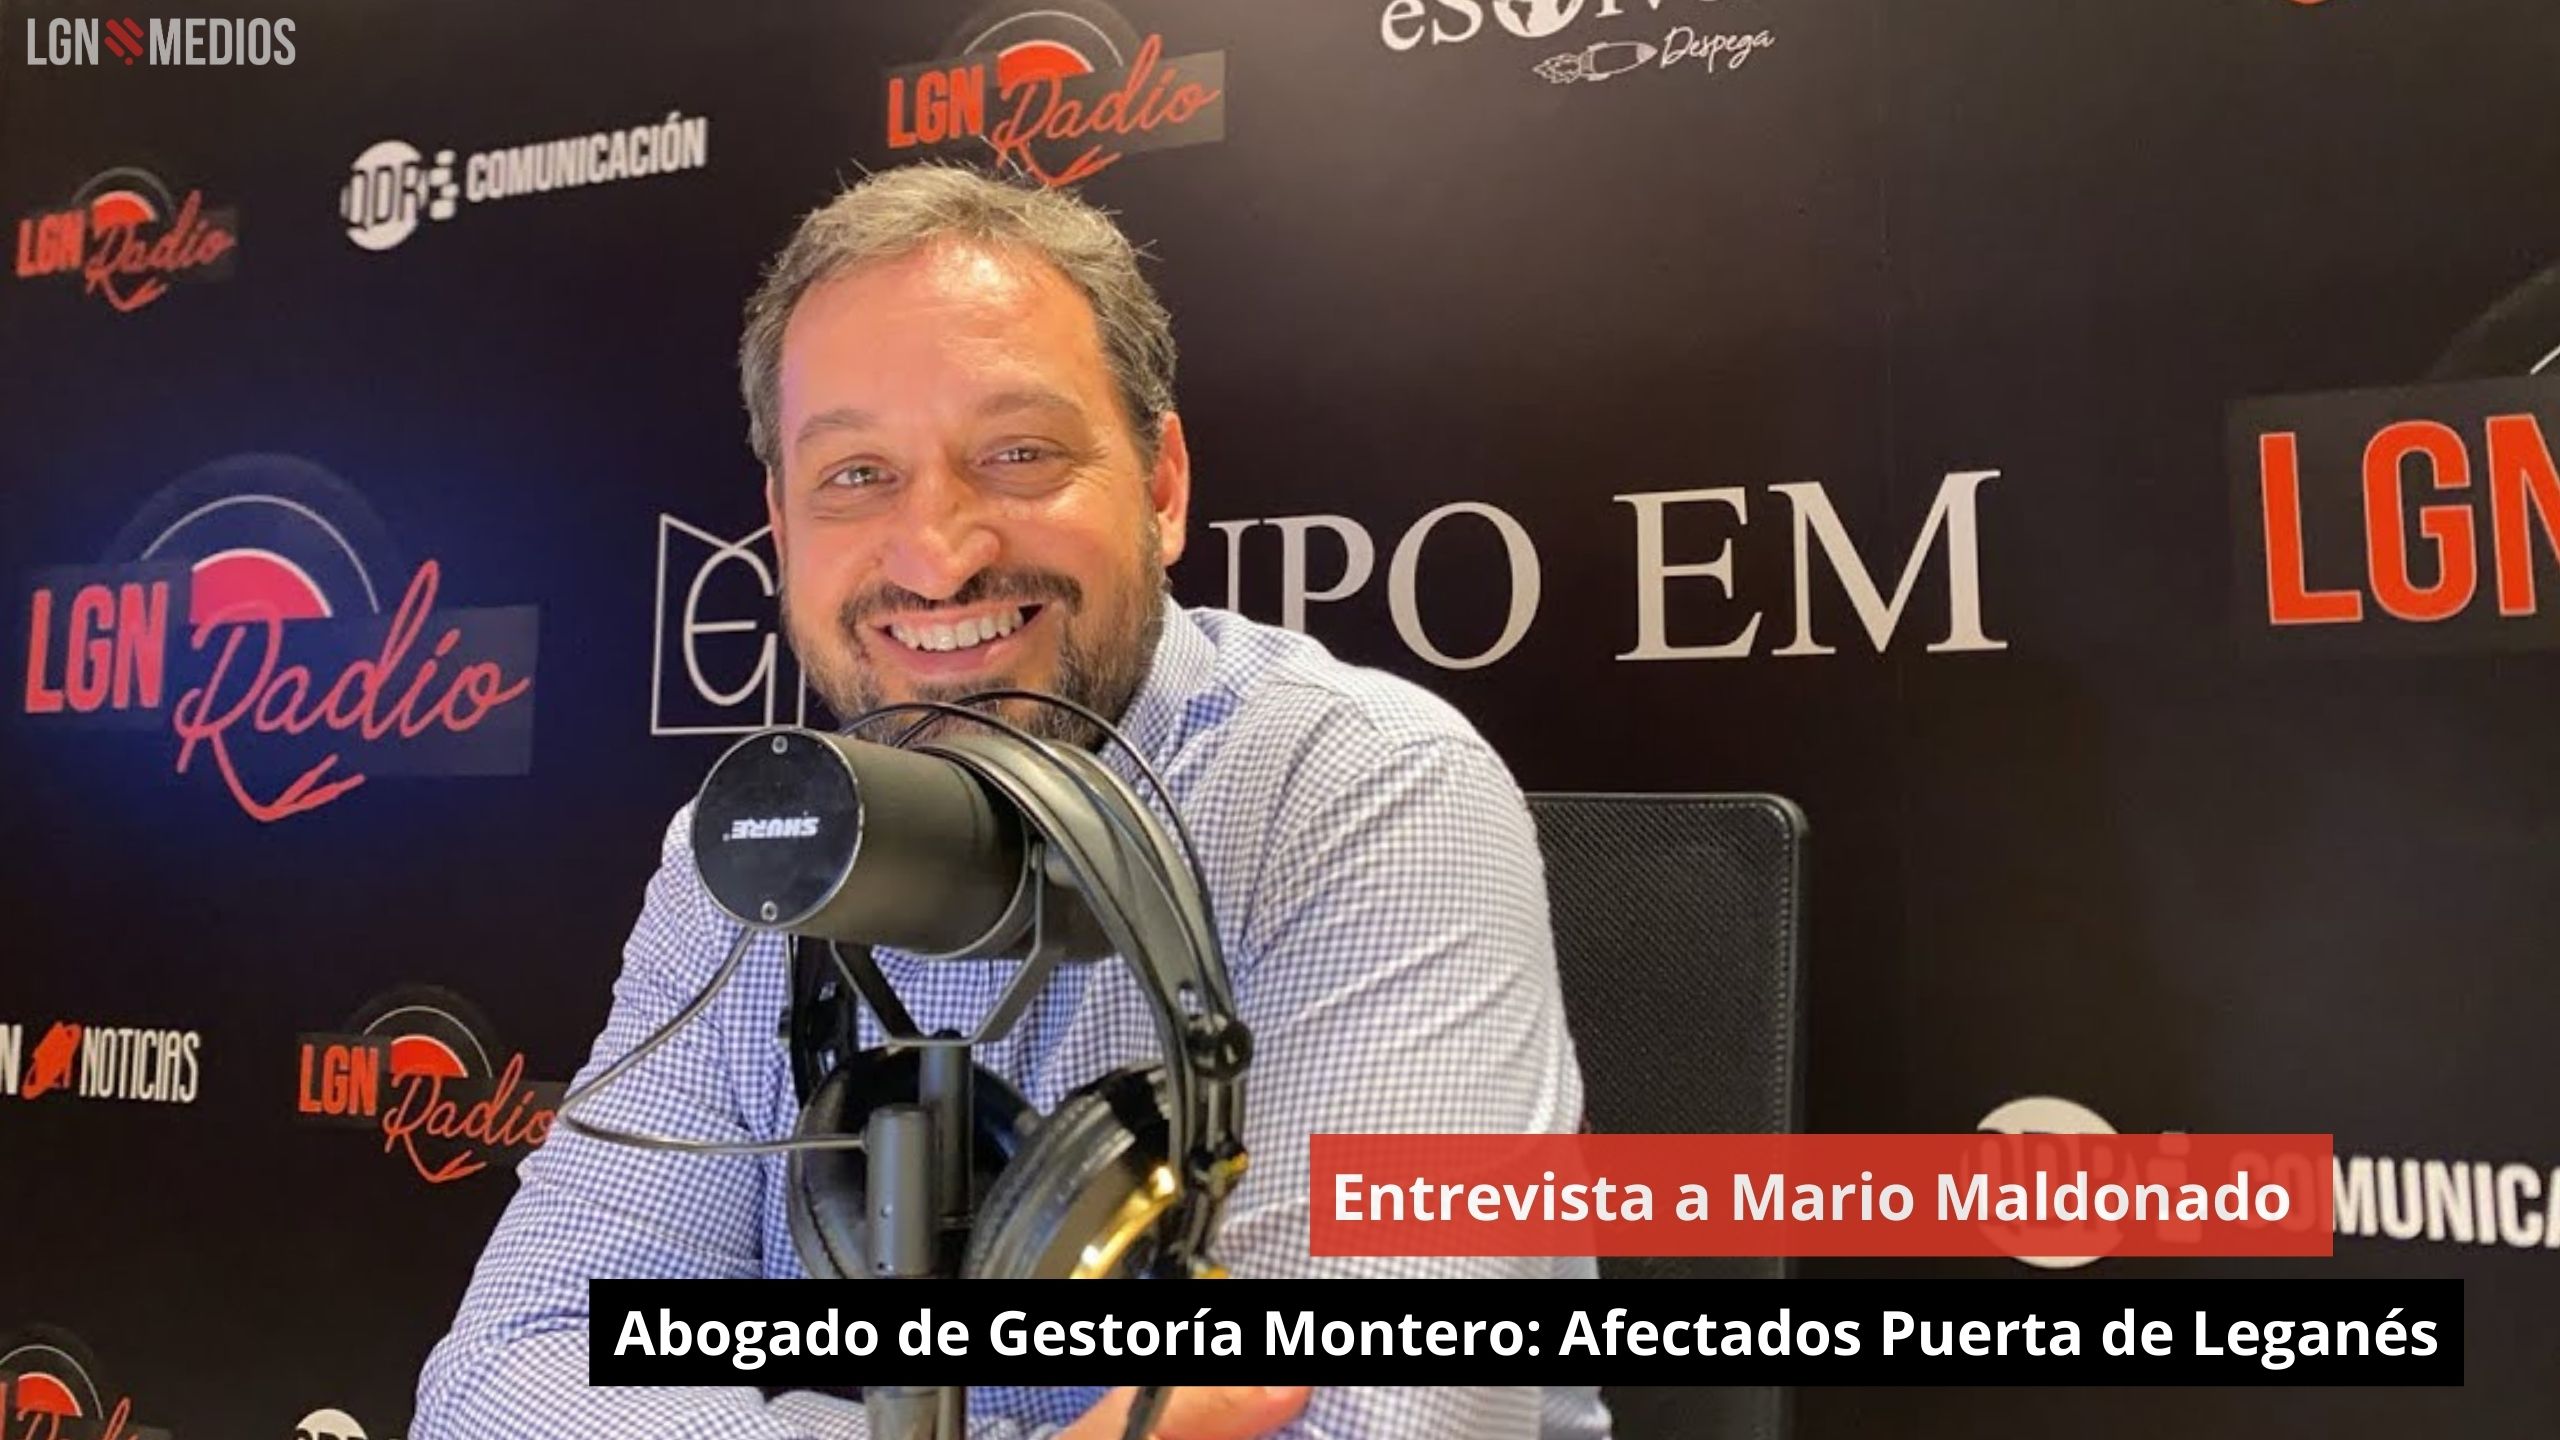 Entrevista a Mario Maldonado. Abogado: "Afectados Puerta de Leganés"